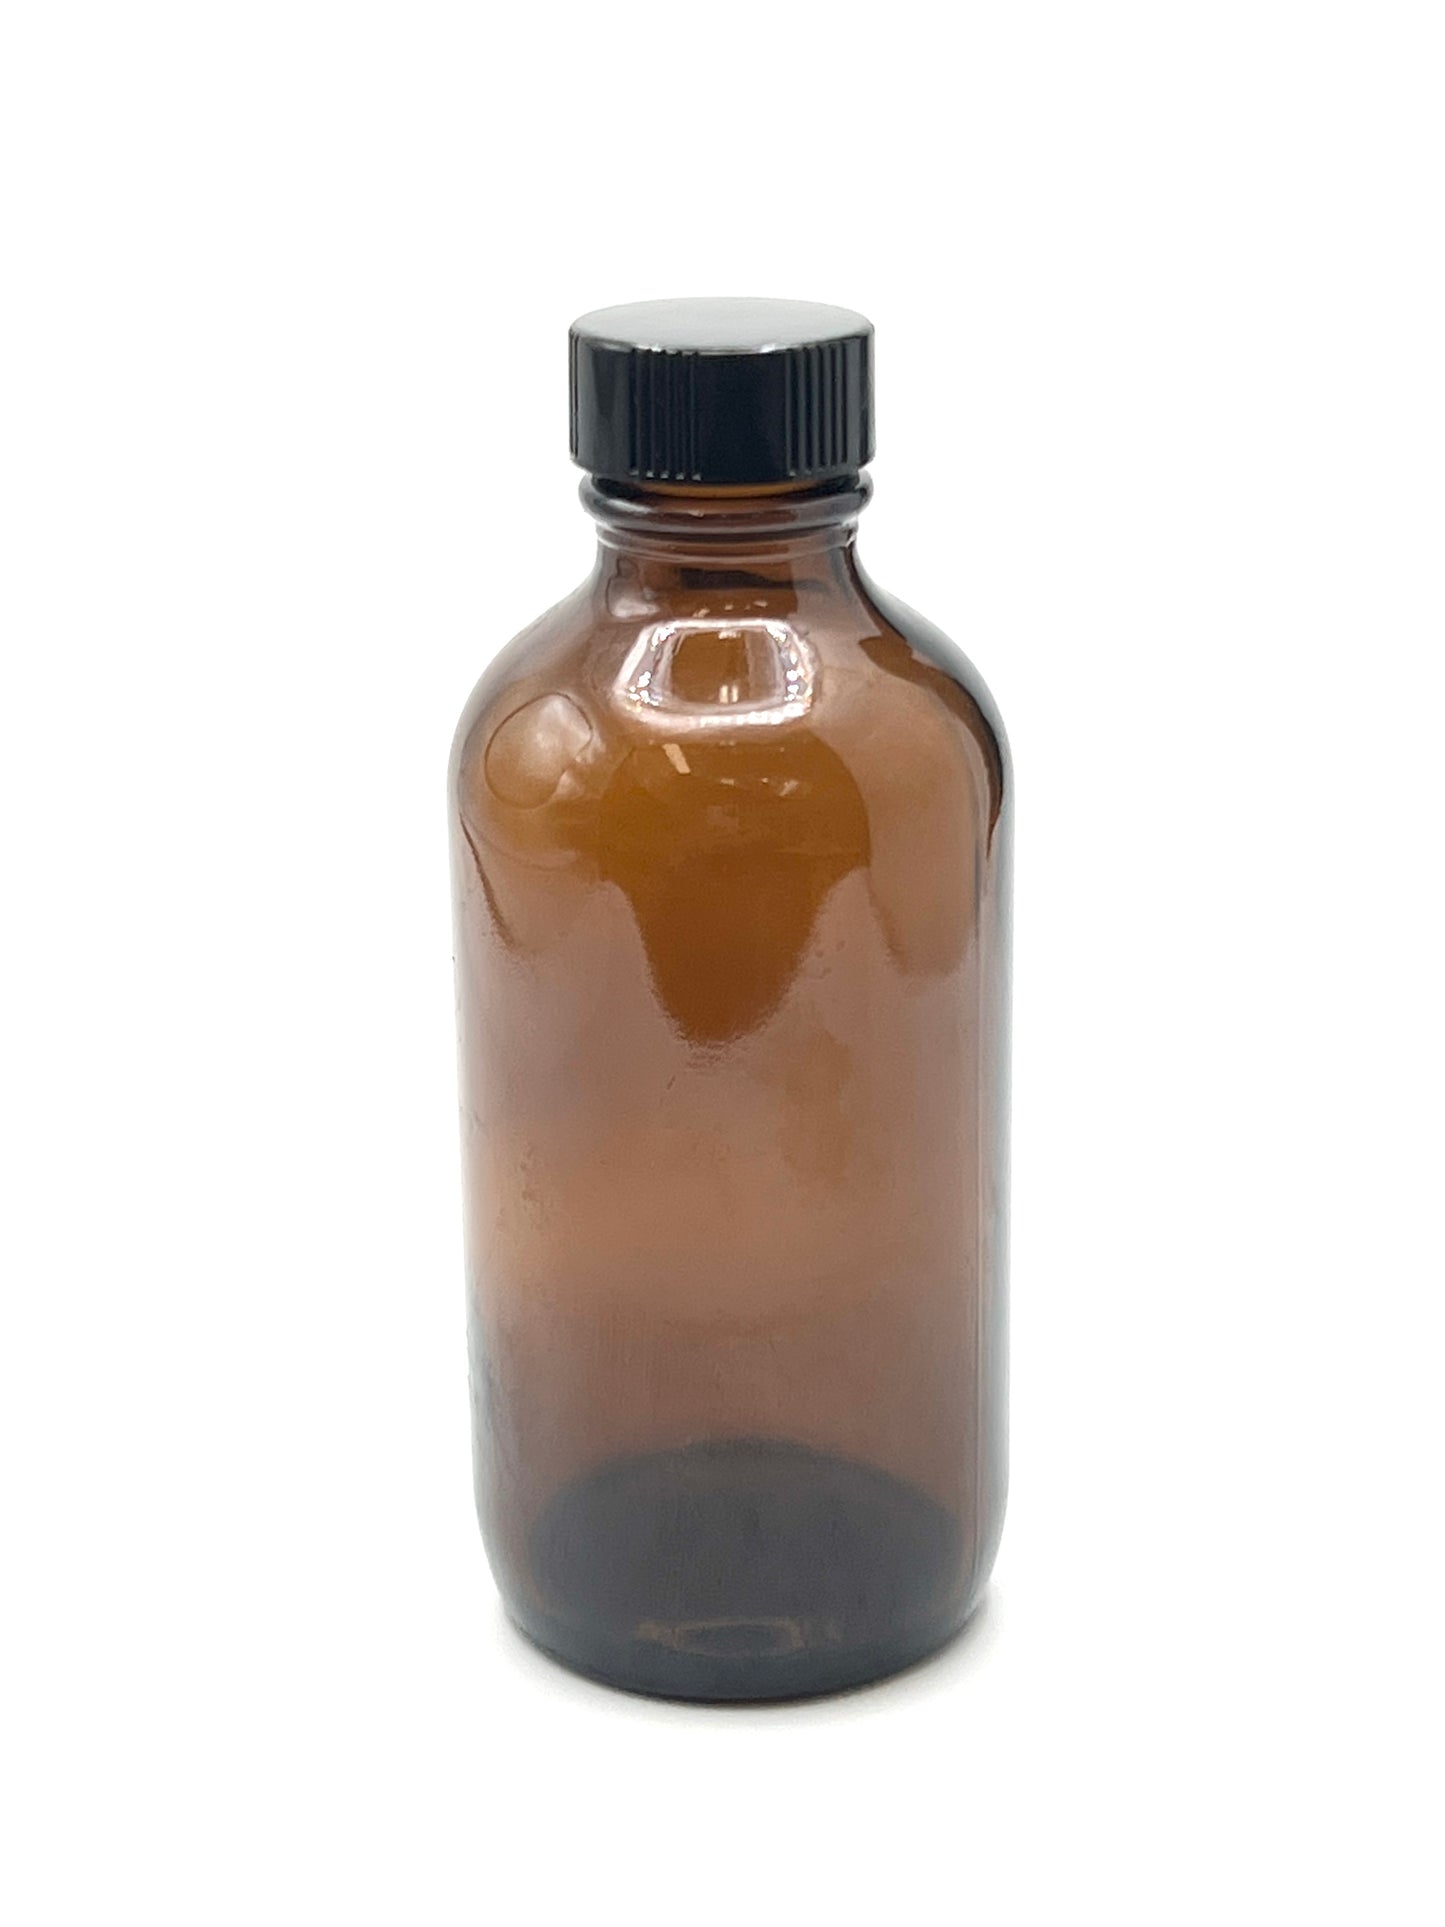 Amber Glass Bottles / Jars